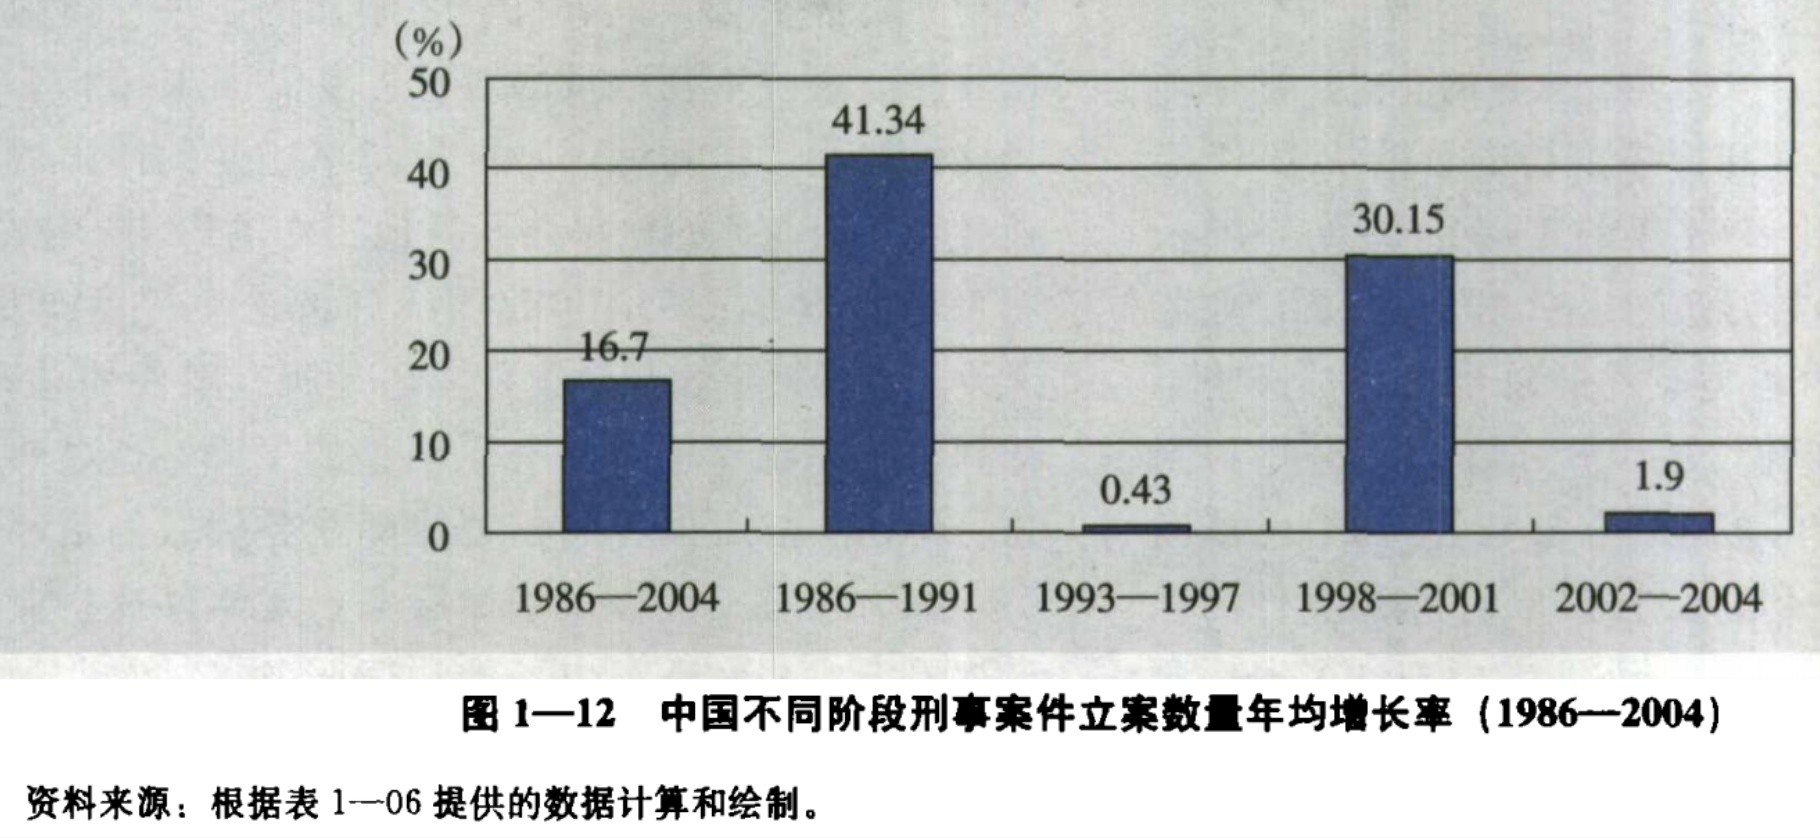 率低?问题在于你确定中国真的有犯罪率统计吗